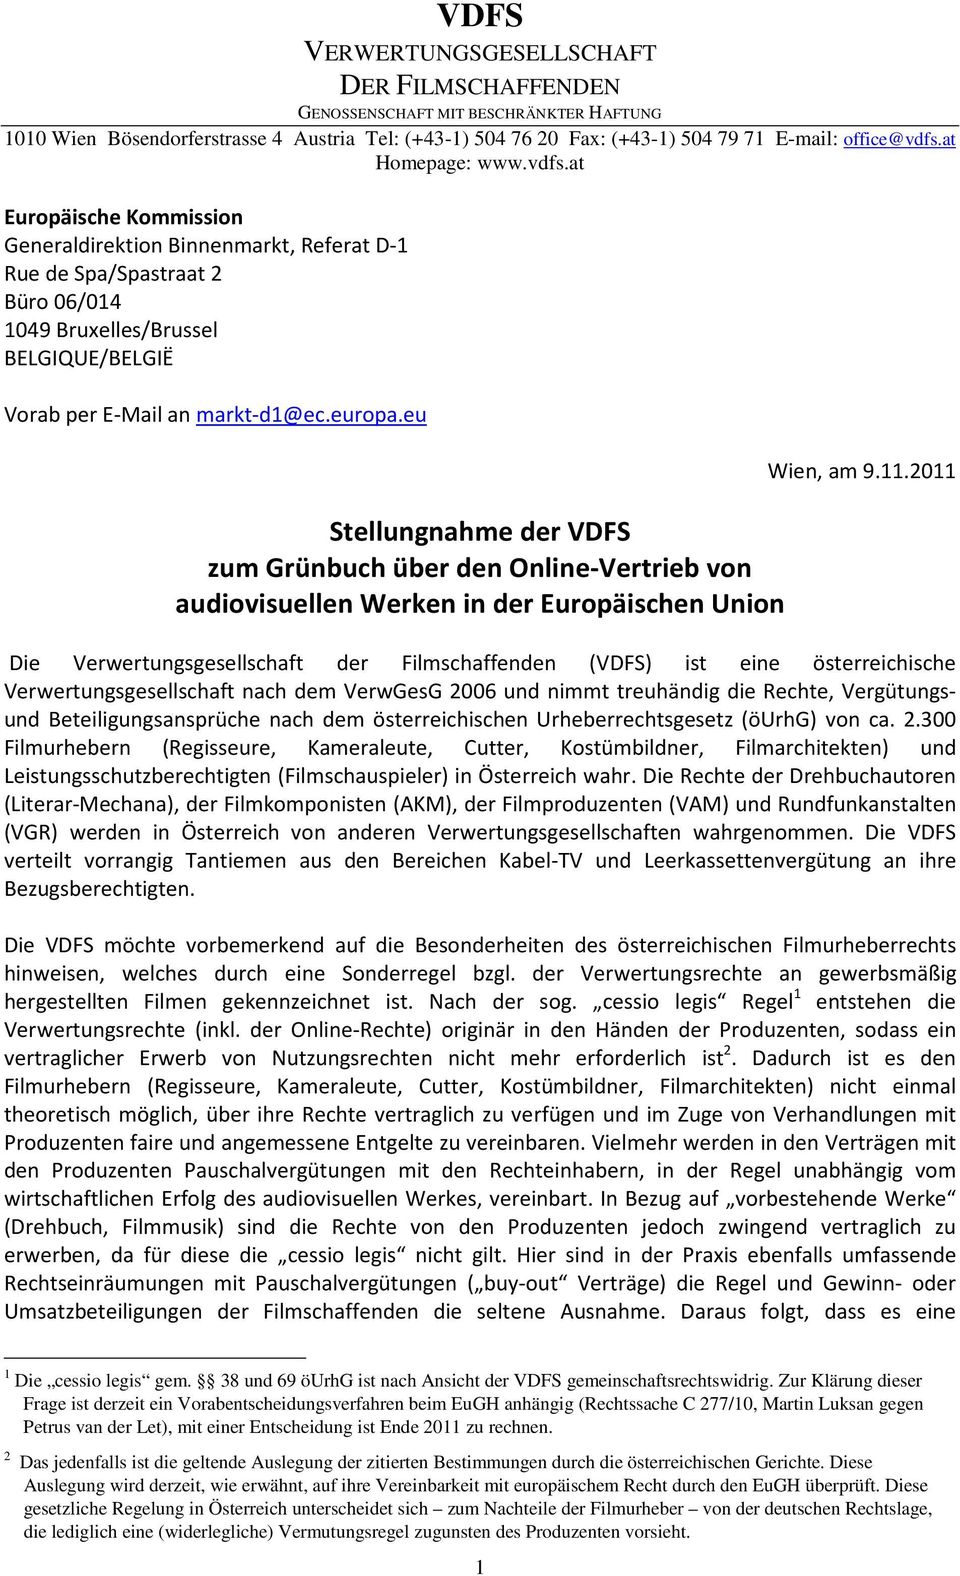 europa.eu Stellungnahme der VDFS zum Grünbuch über den Online-Vertrieb von audiovisuellen Werken in der Europäischen Union Wien, am 9.11.